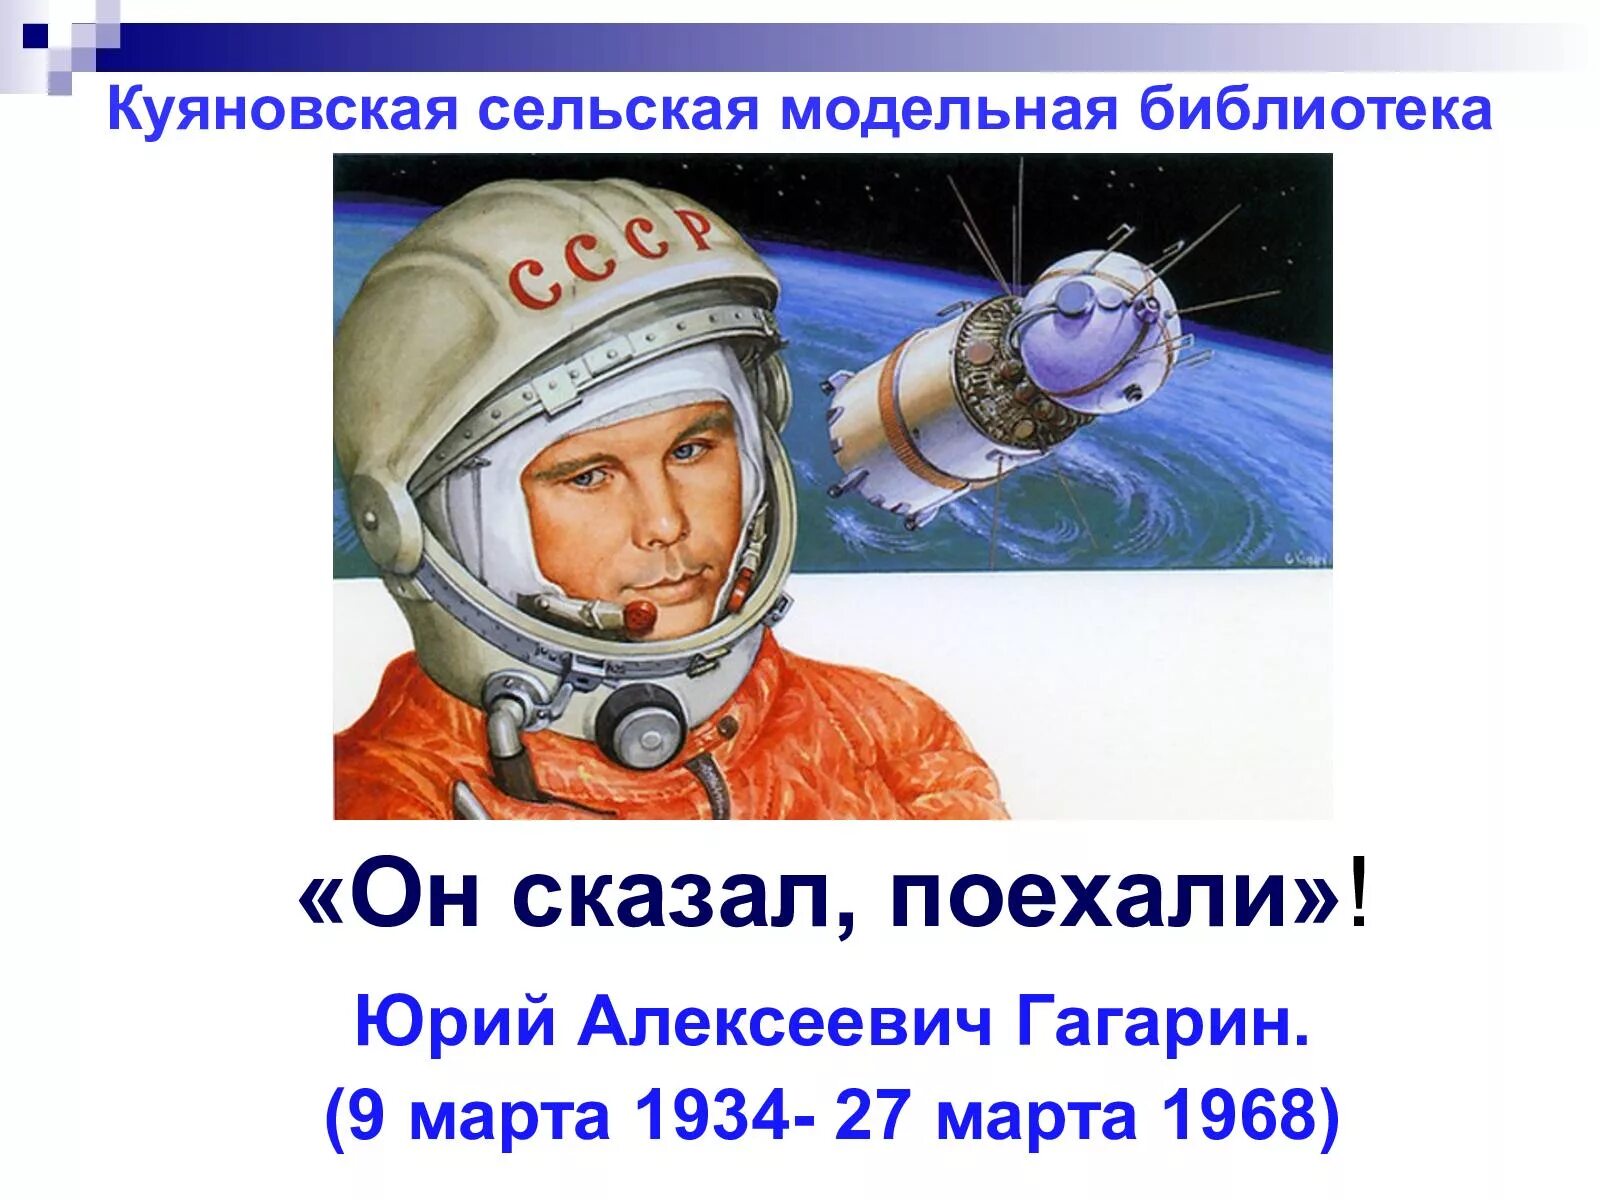 Он сказал поехали. Гагарин сказал поехали. День космонавтики.